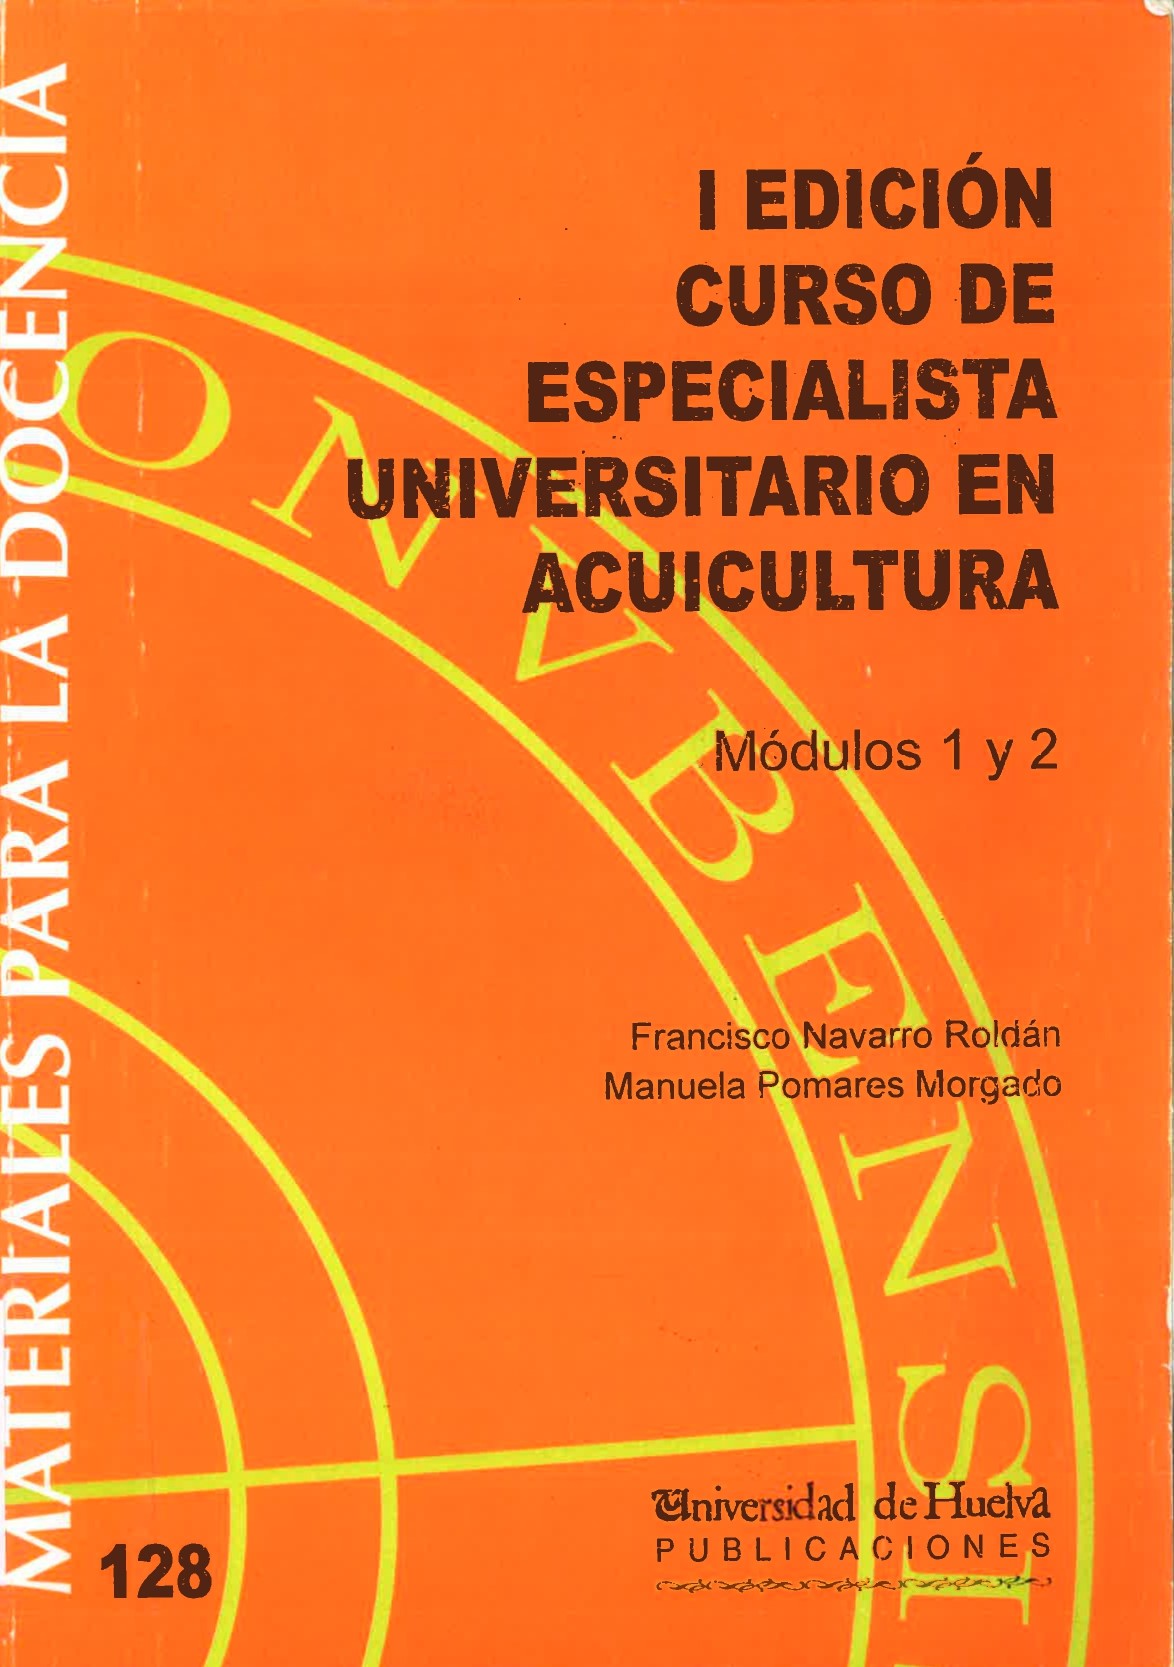 Imagen de portada del libro I Edición Curso de especialista universitario en acuicultura